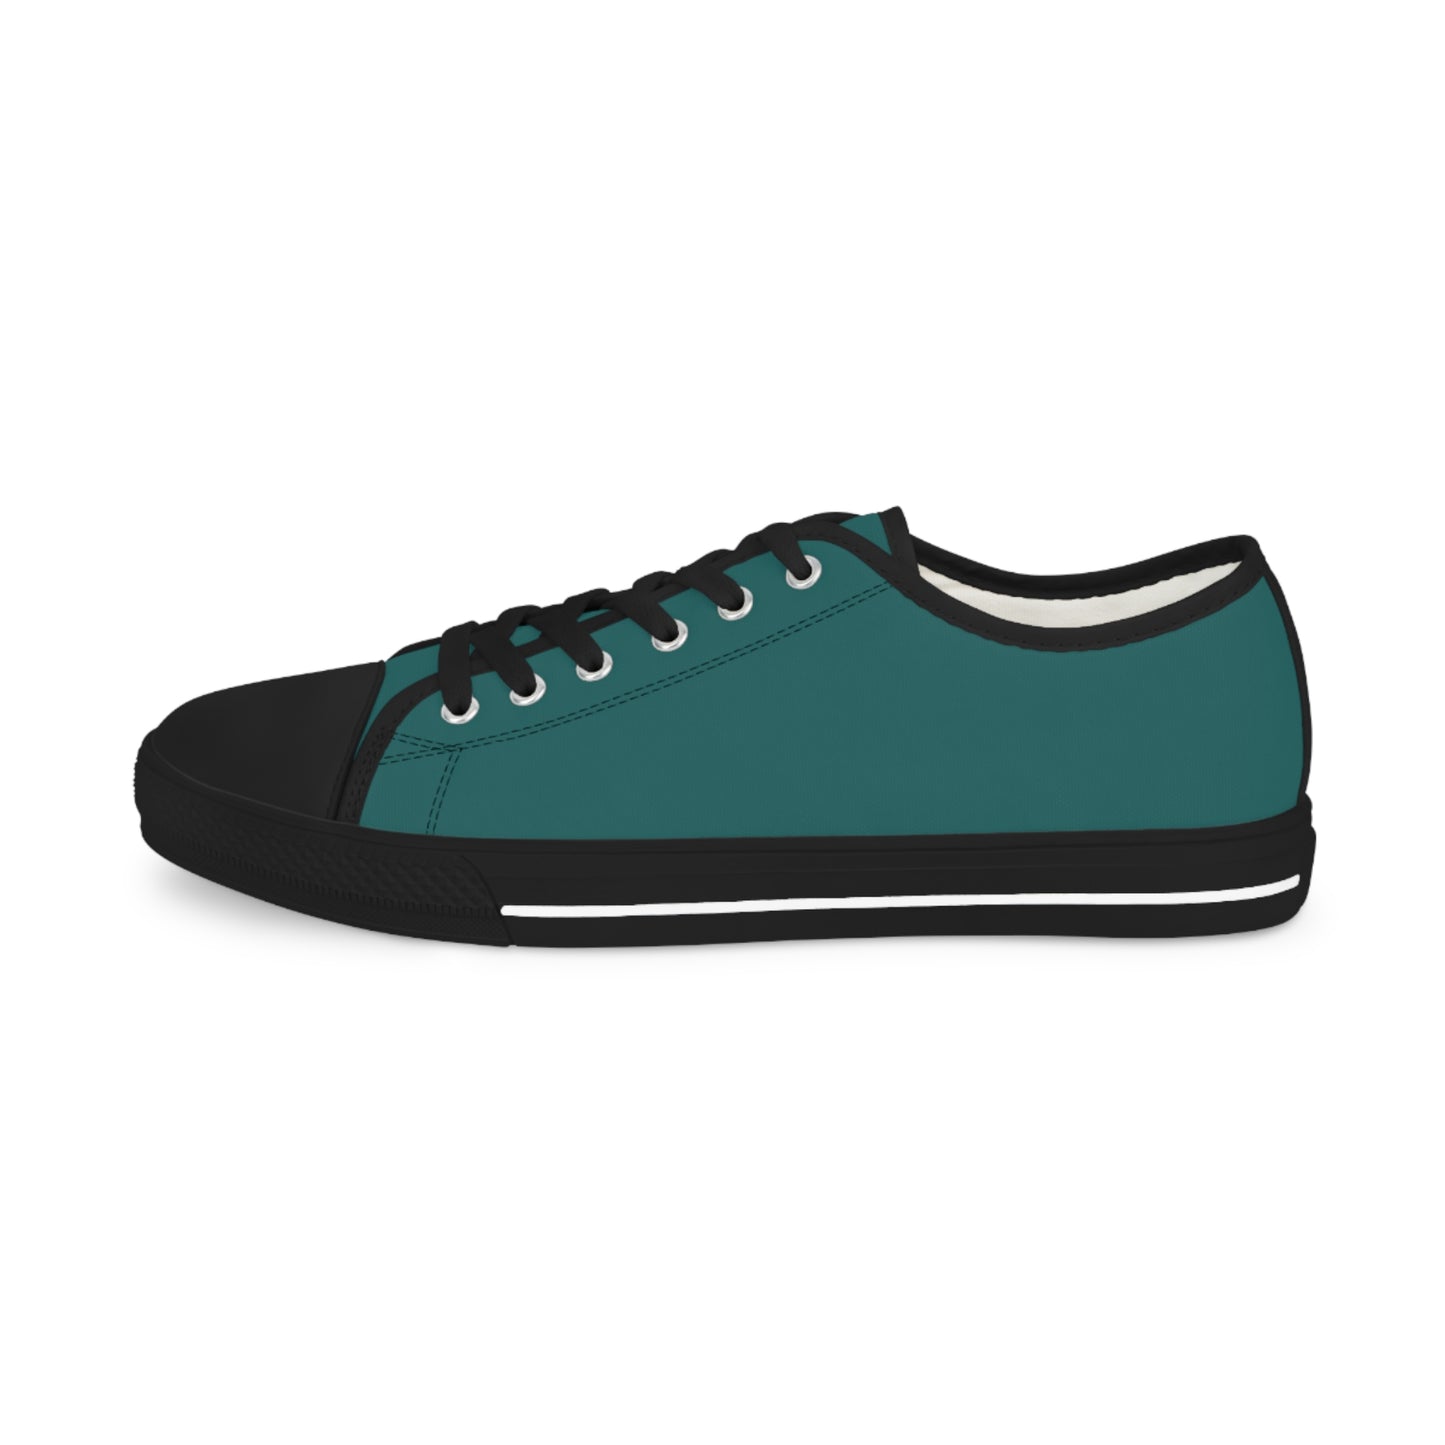 Men's Low Top Sneakers - Dark Teal US 14 Black sole